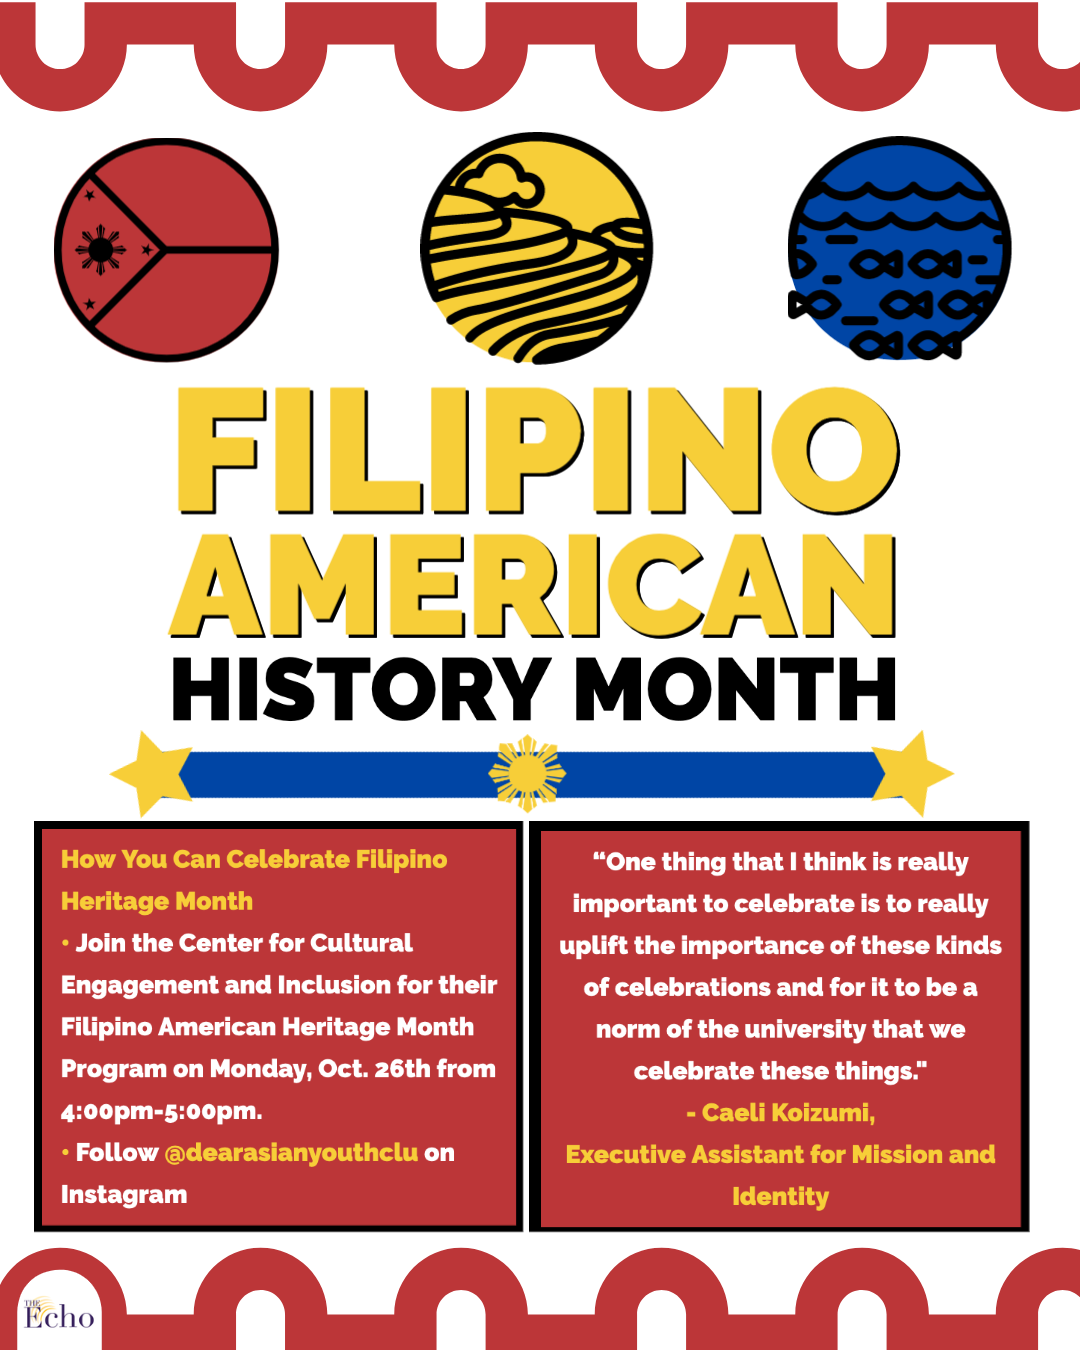 Filipino Heritage Month